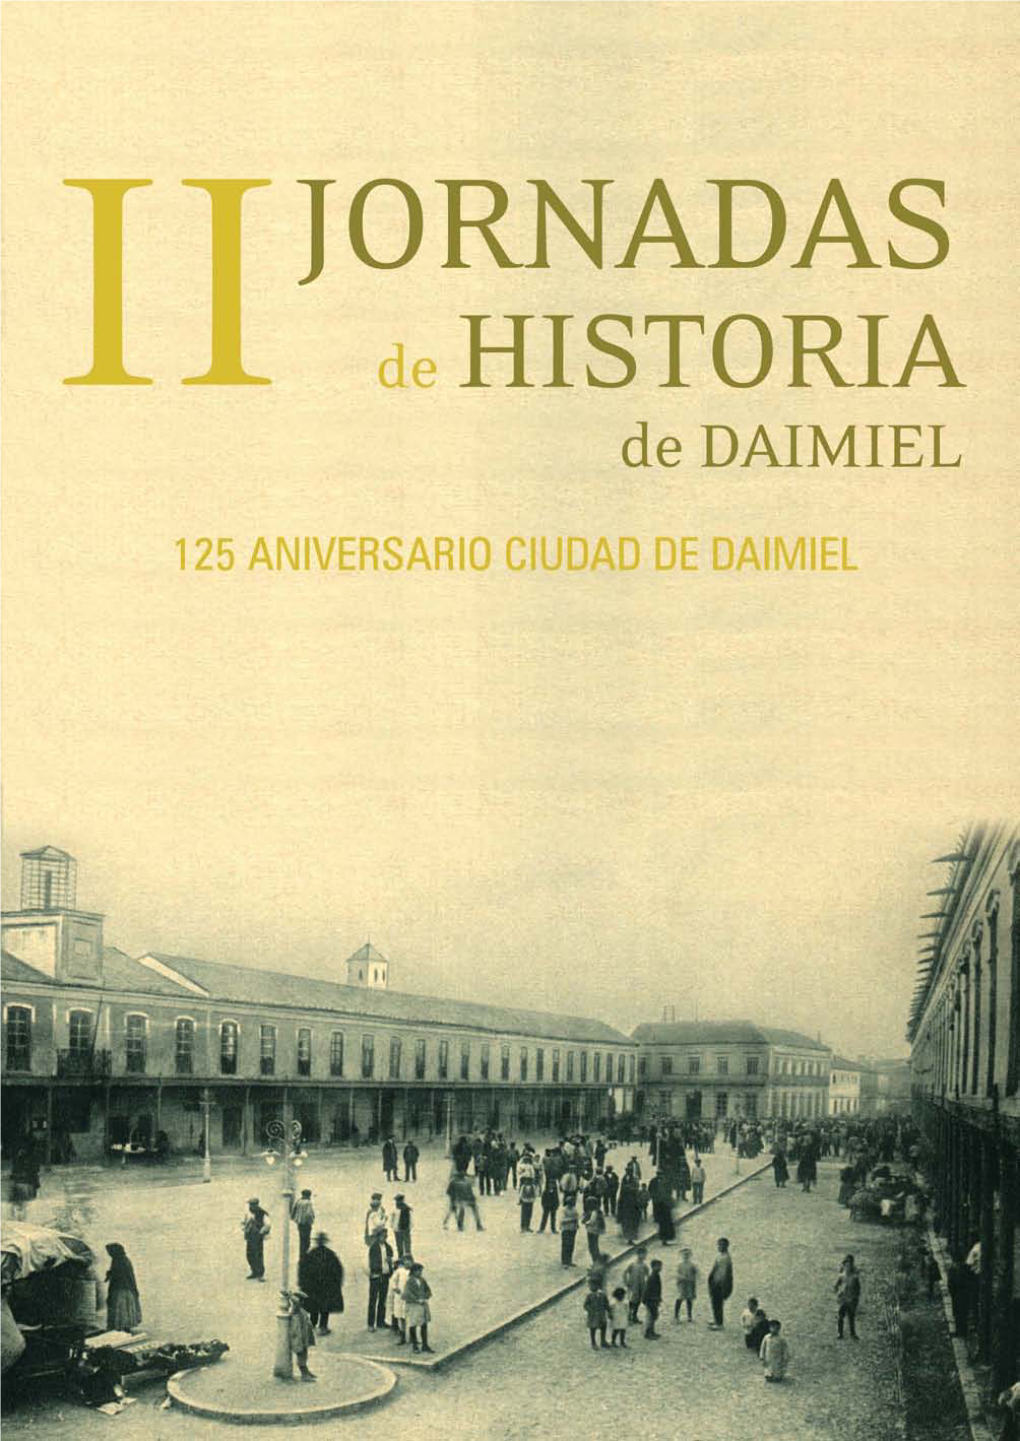 La Romanización En Daimiel. Estudio De Los Primeros Grupos Históricos De La Comarca a Través De Su Cultura Material